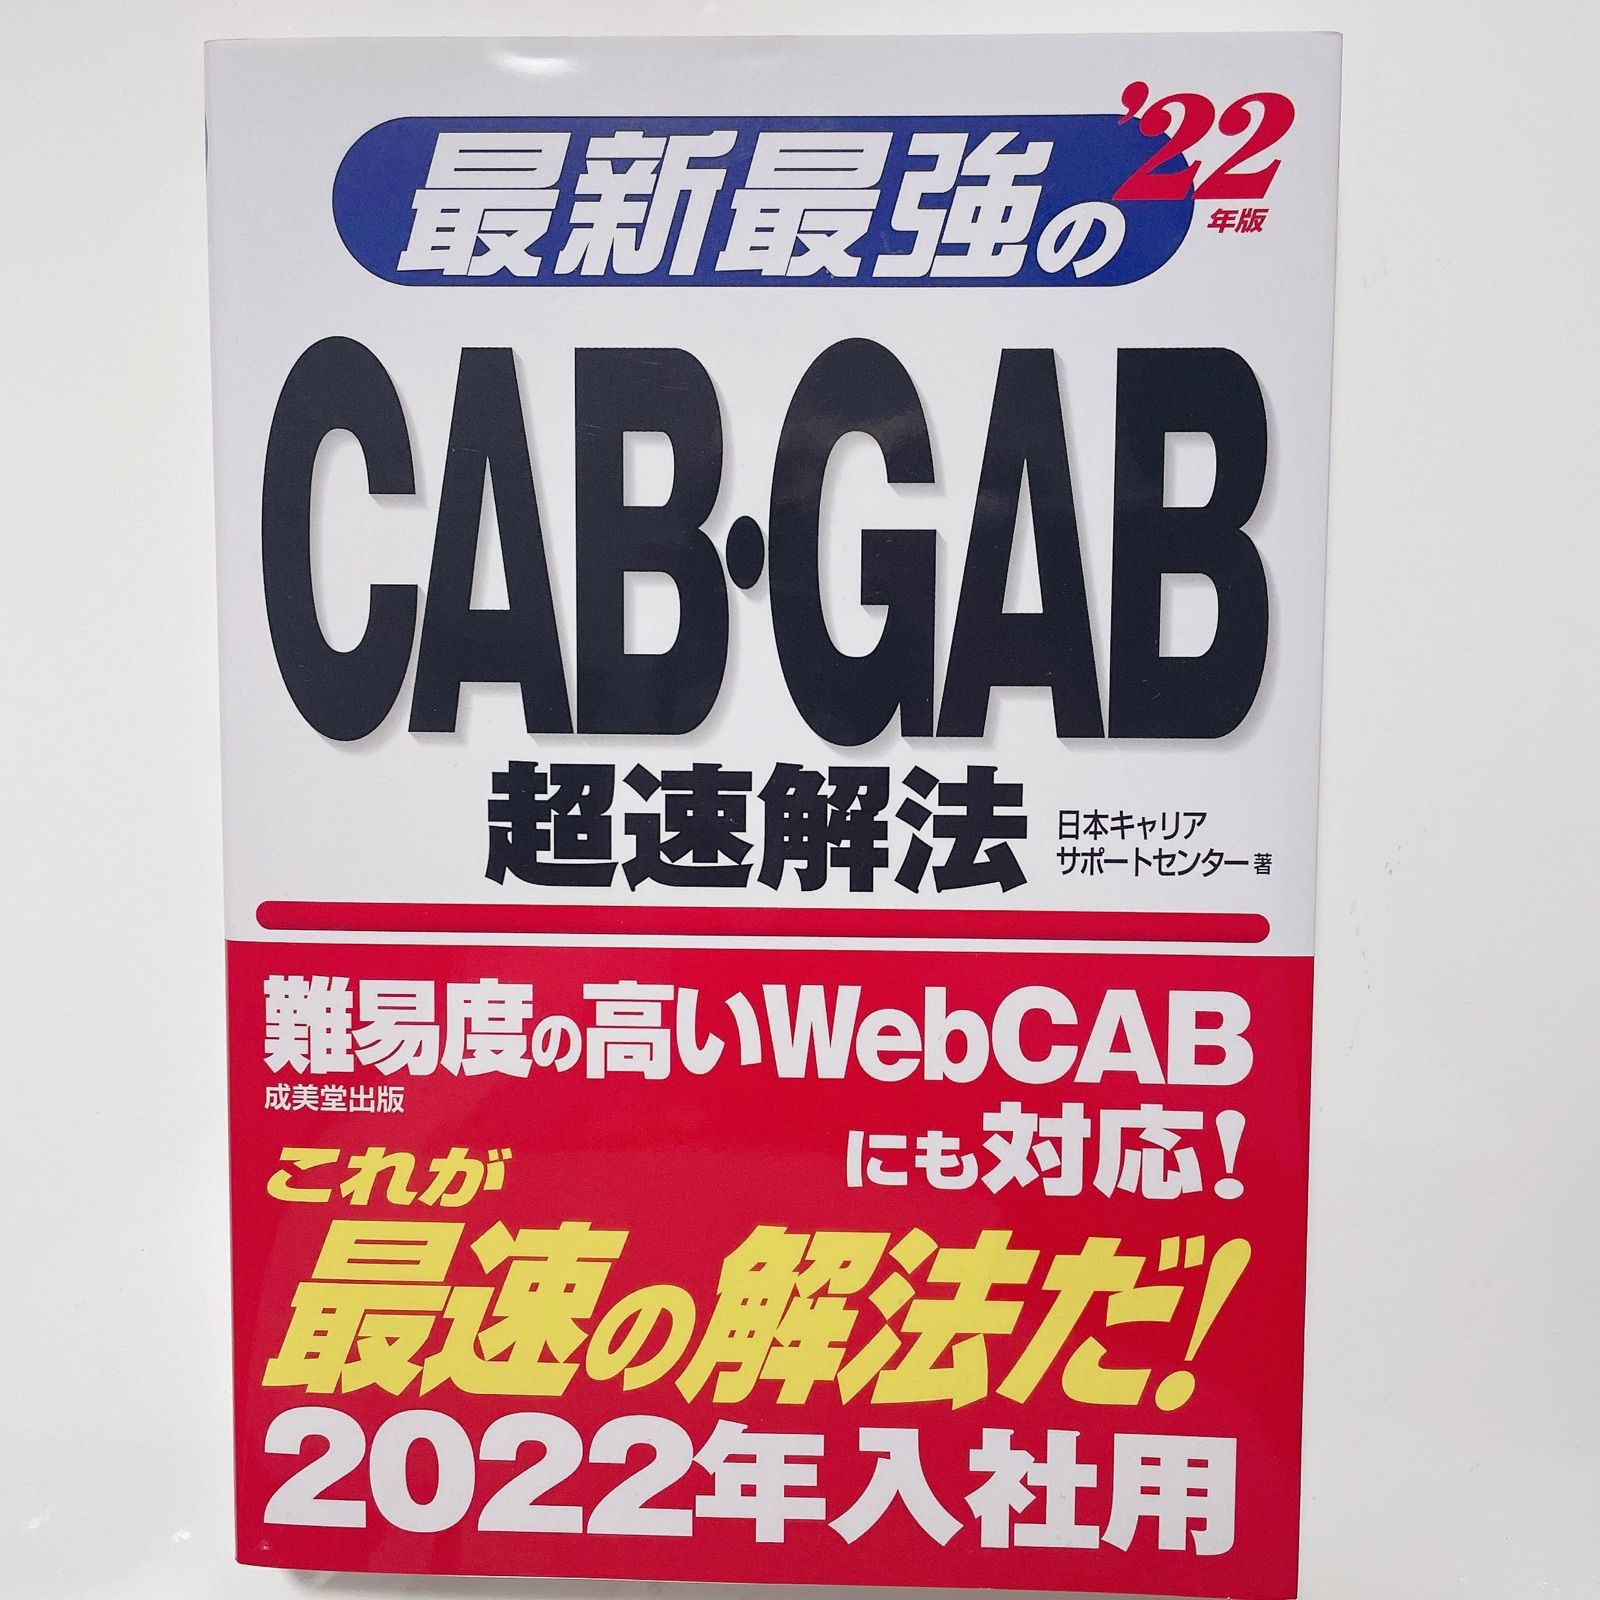 最新最強のCAB・GAB超速解法 '22年版 【初回限定】 - その他